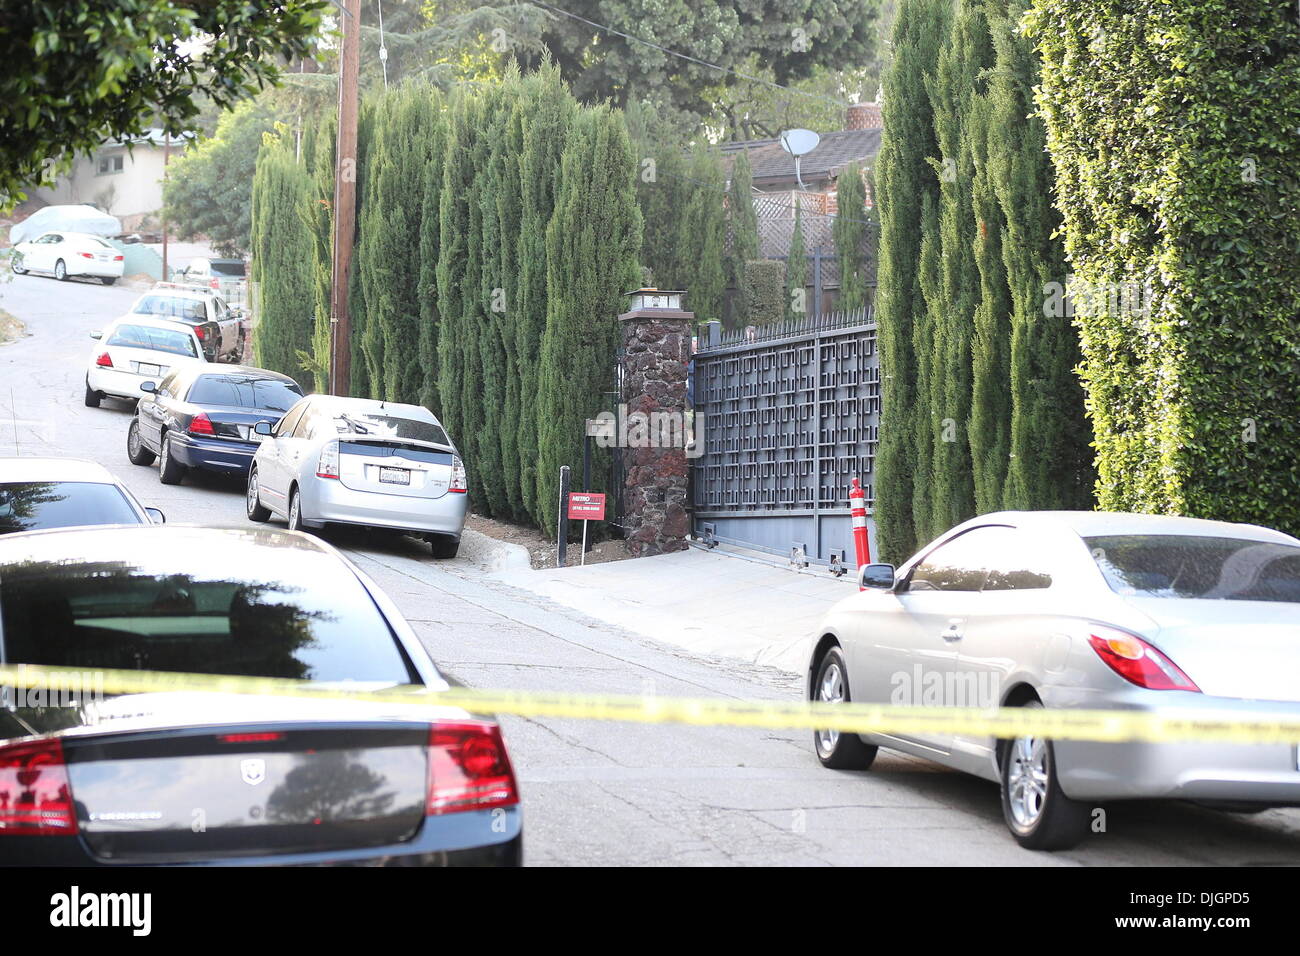 Sage Stallone Haus versammeln sich Mitglieder der Presse außerhalb des  Hauses der 36 Jahre alte Sage Stallone, wo er angeblich tot aufgefunden  wurde. Los Angeles, Kalifornien - 13.07.12 Stockfotografie - Alamy